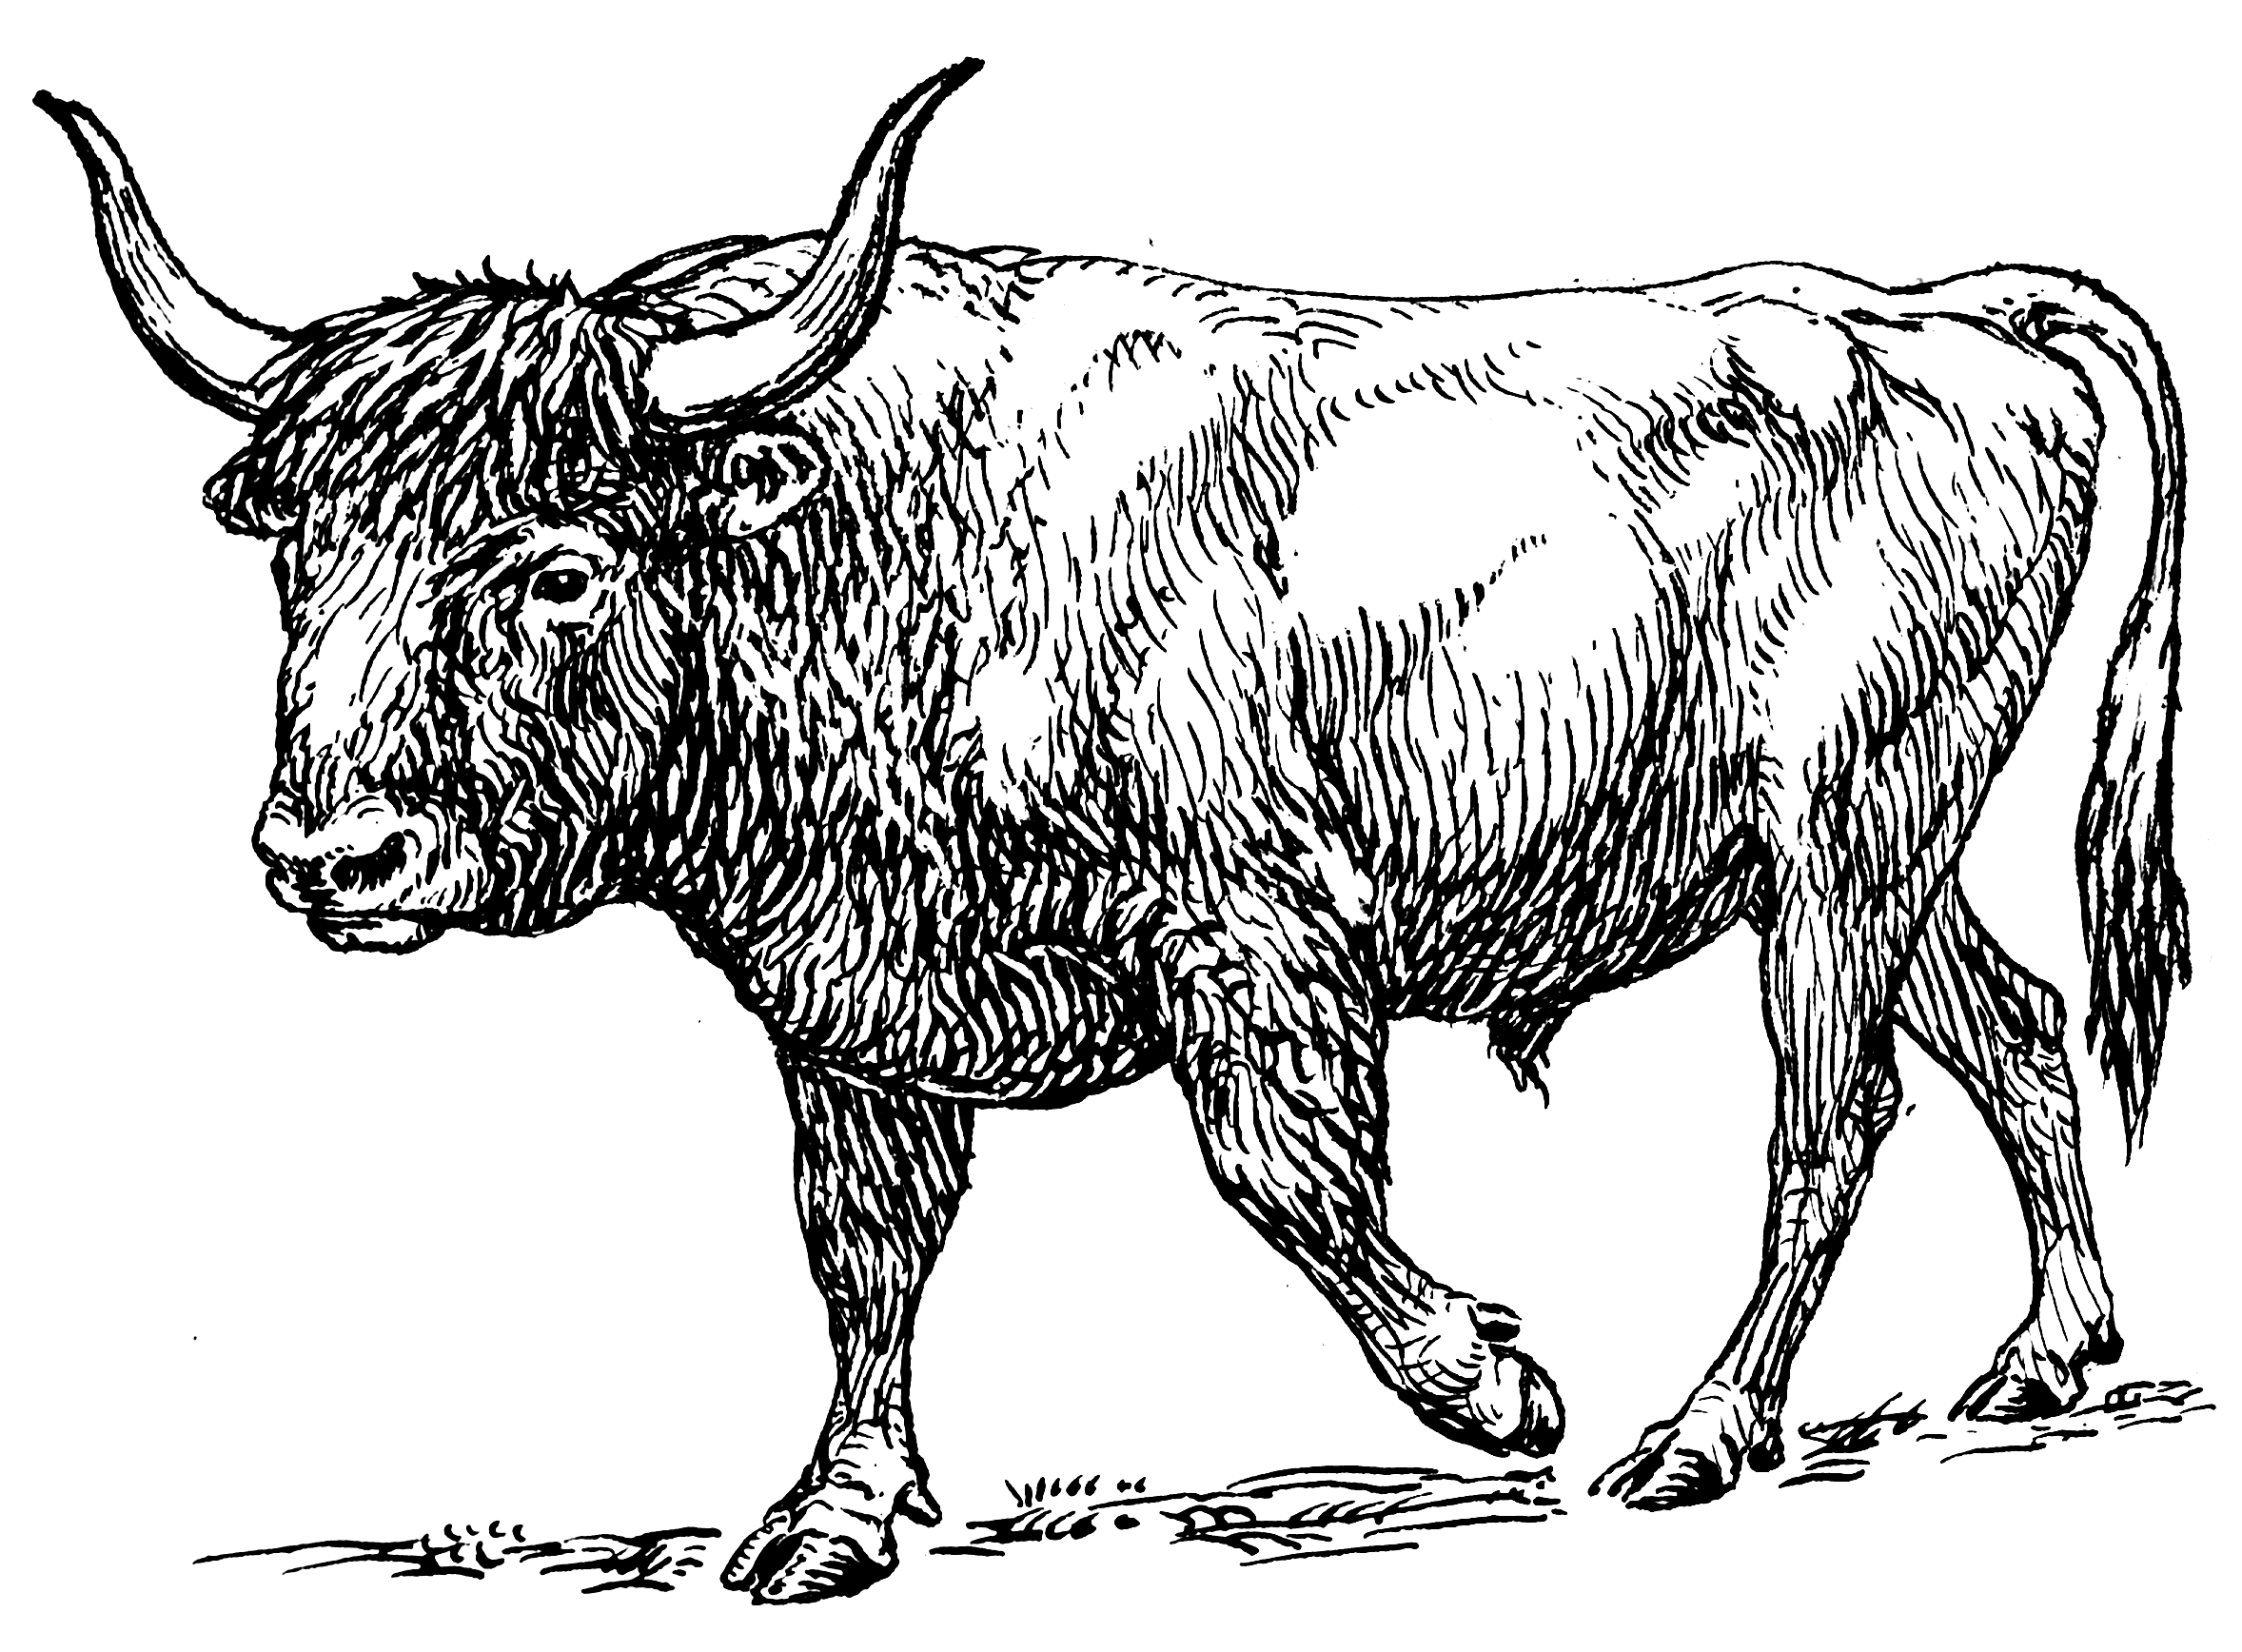 Ficheiro:R101 and cows.jpg – Wikipédia, a enciclopédia livre